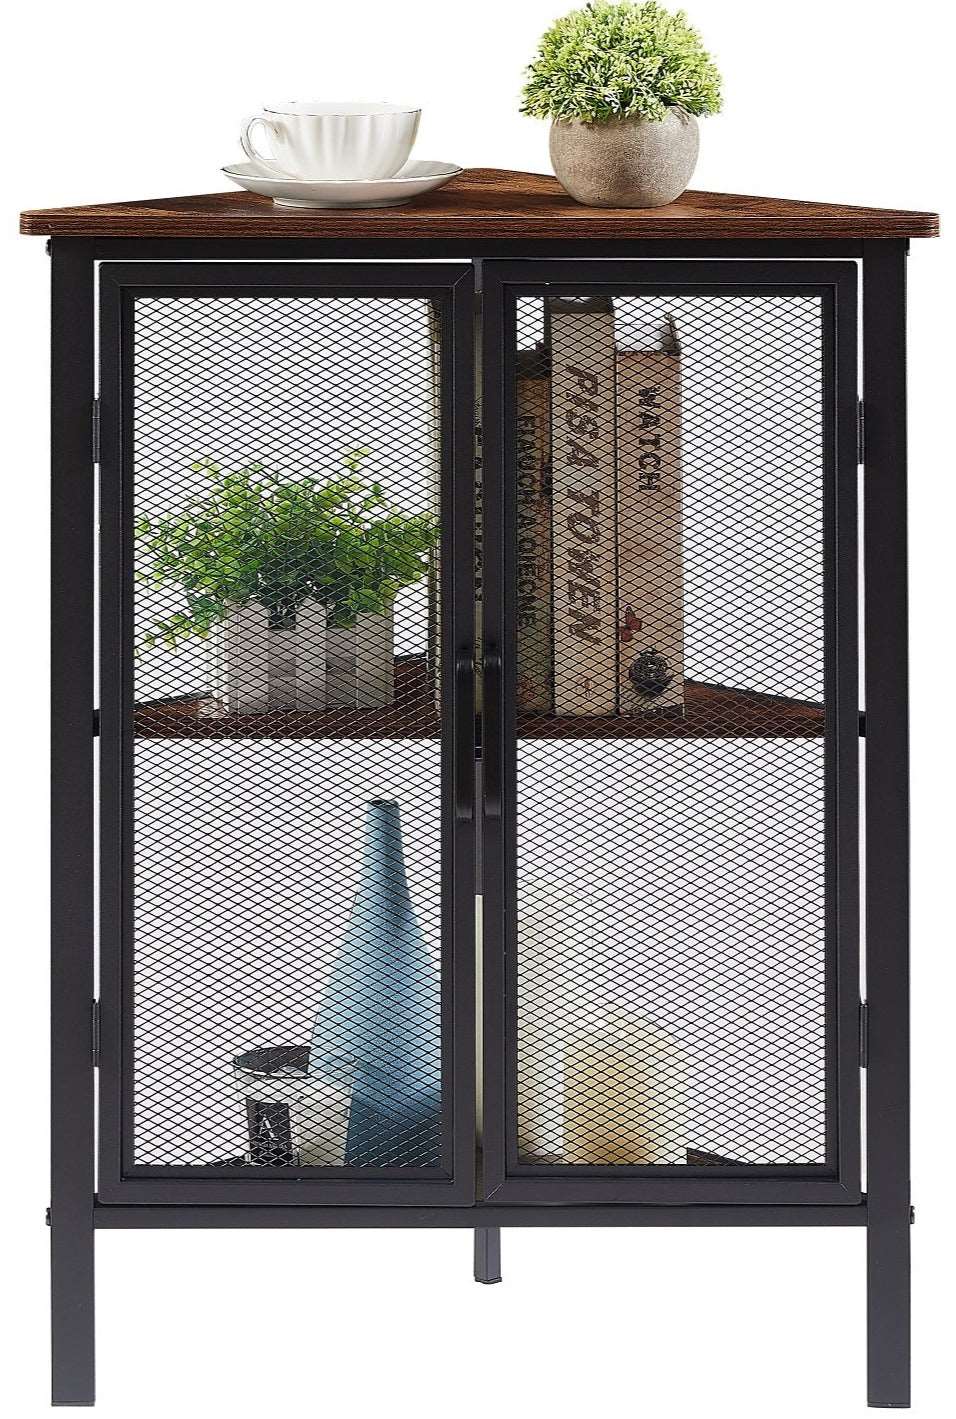 VECELO 3 Tier Corner Cabinet Shelf Display Rack with Grid Doors for Bedroom, Living Room and kitchen